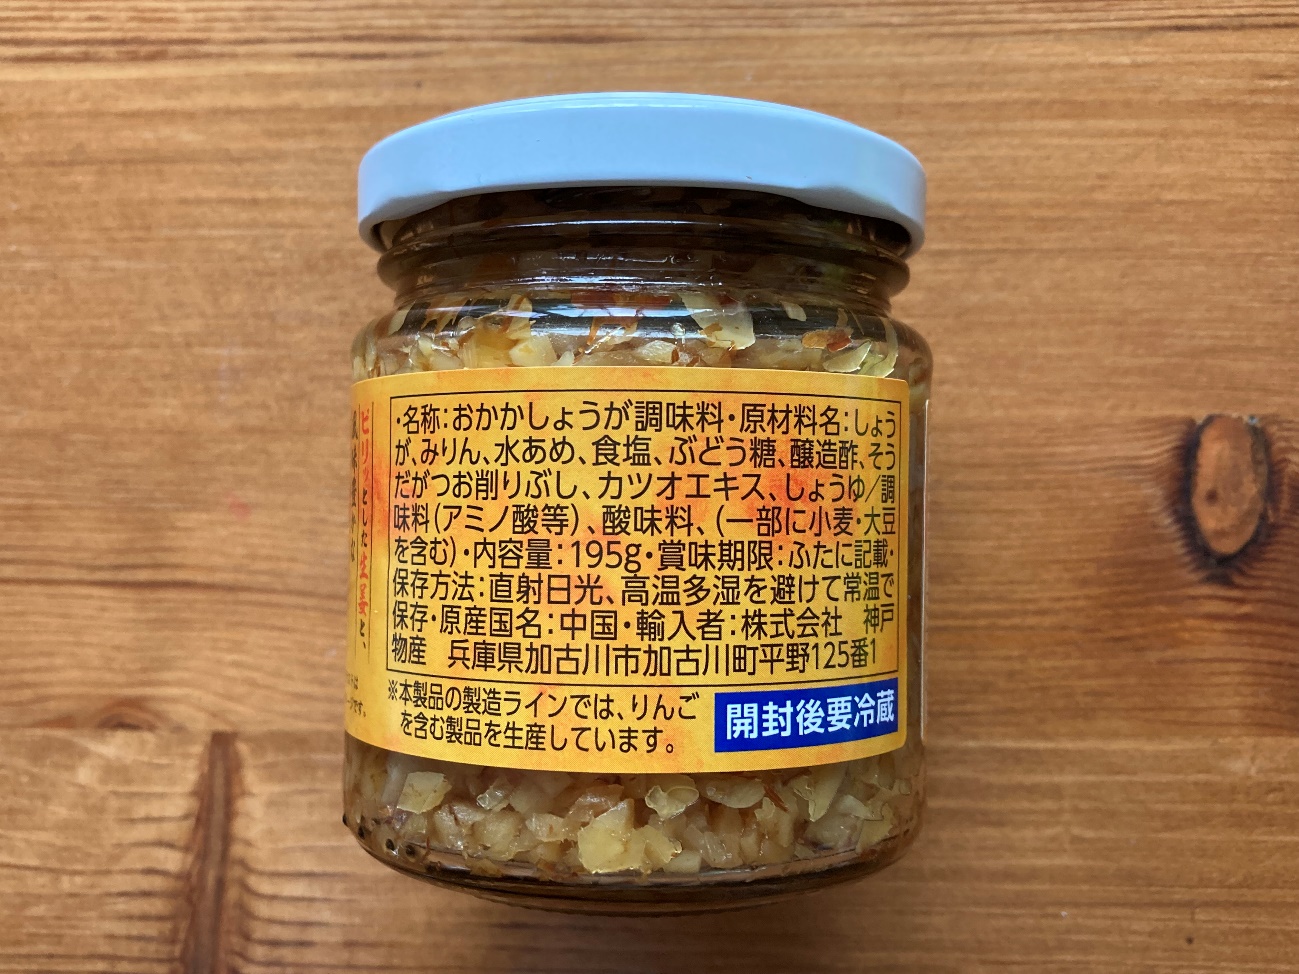 業務スーパーのおかか生姜の原材料名と原産国名の表記